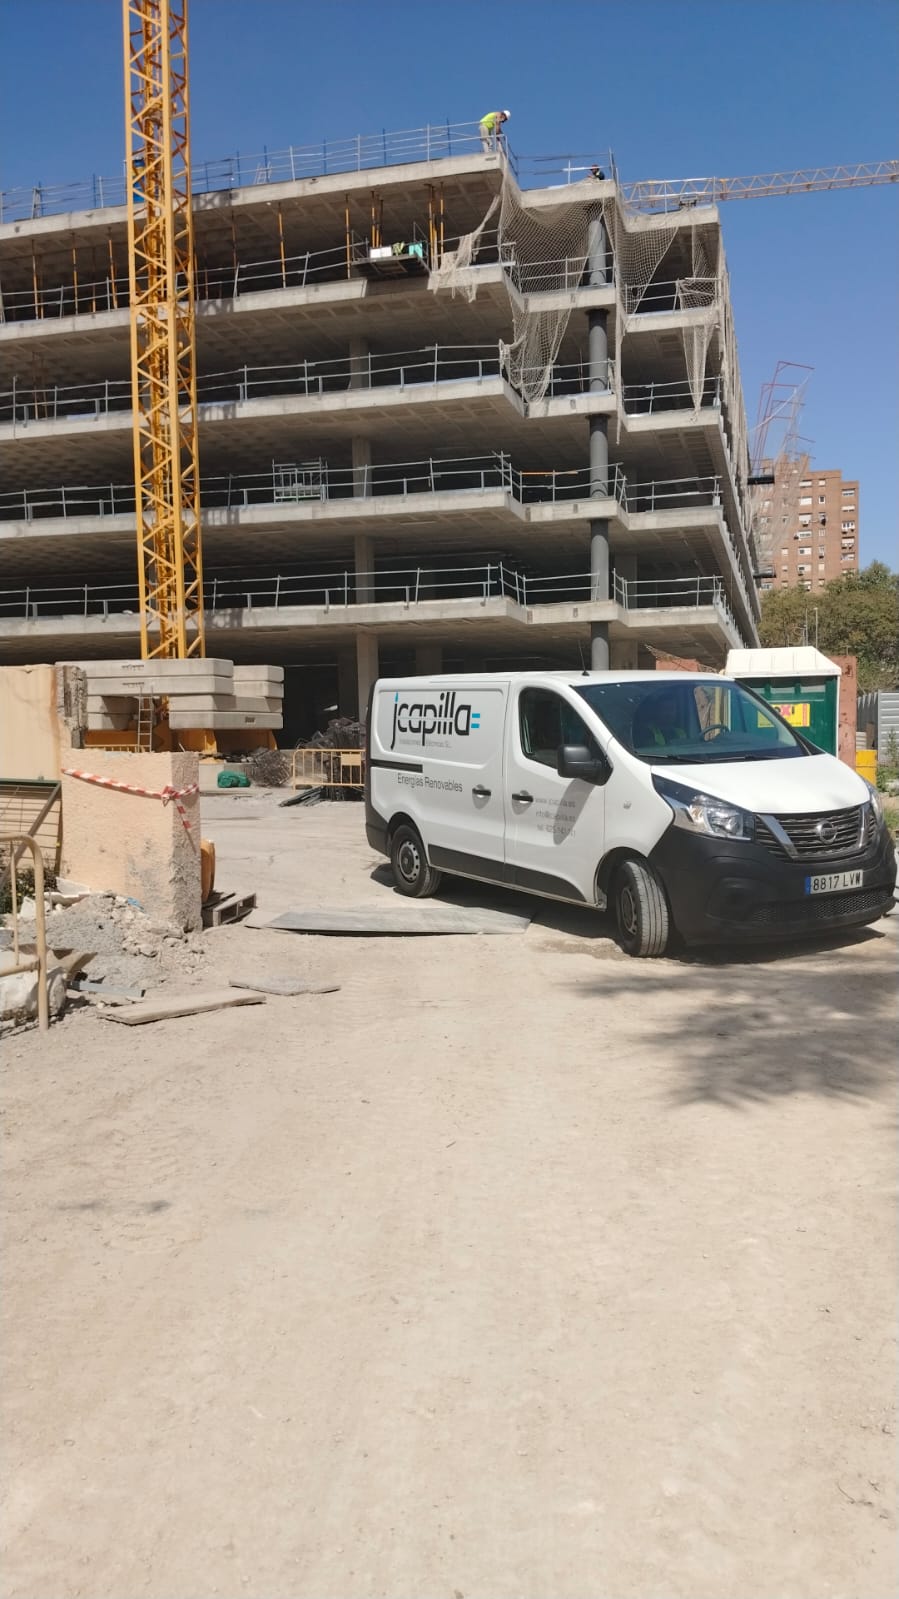 Imagen JCapilla Instalaciones Eléctricas: Participamos en la construcción el Emblemático Proyecto del Roig Arena en Valencia